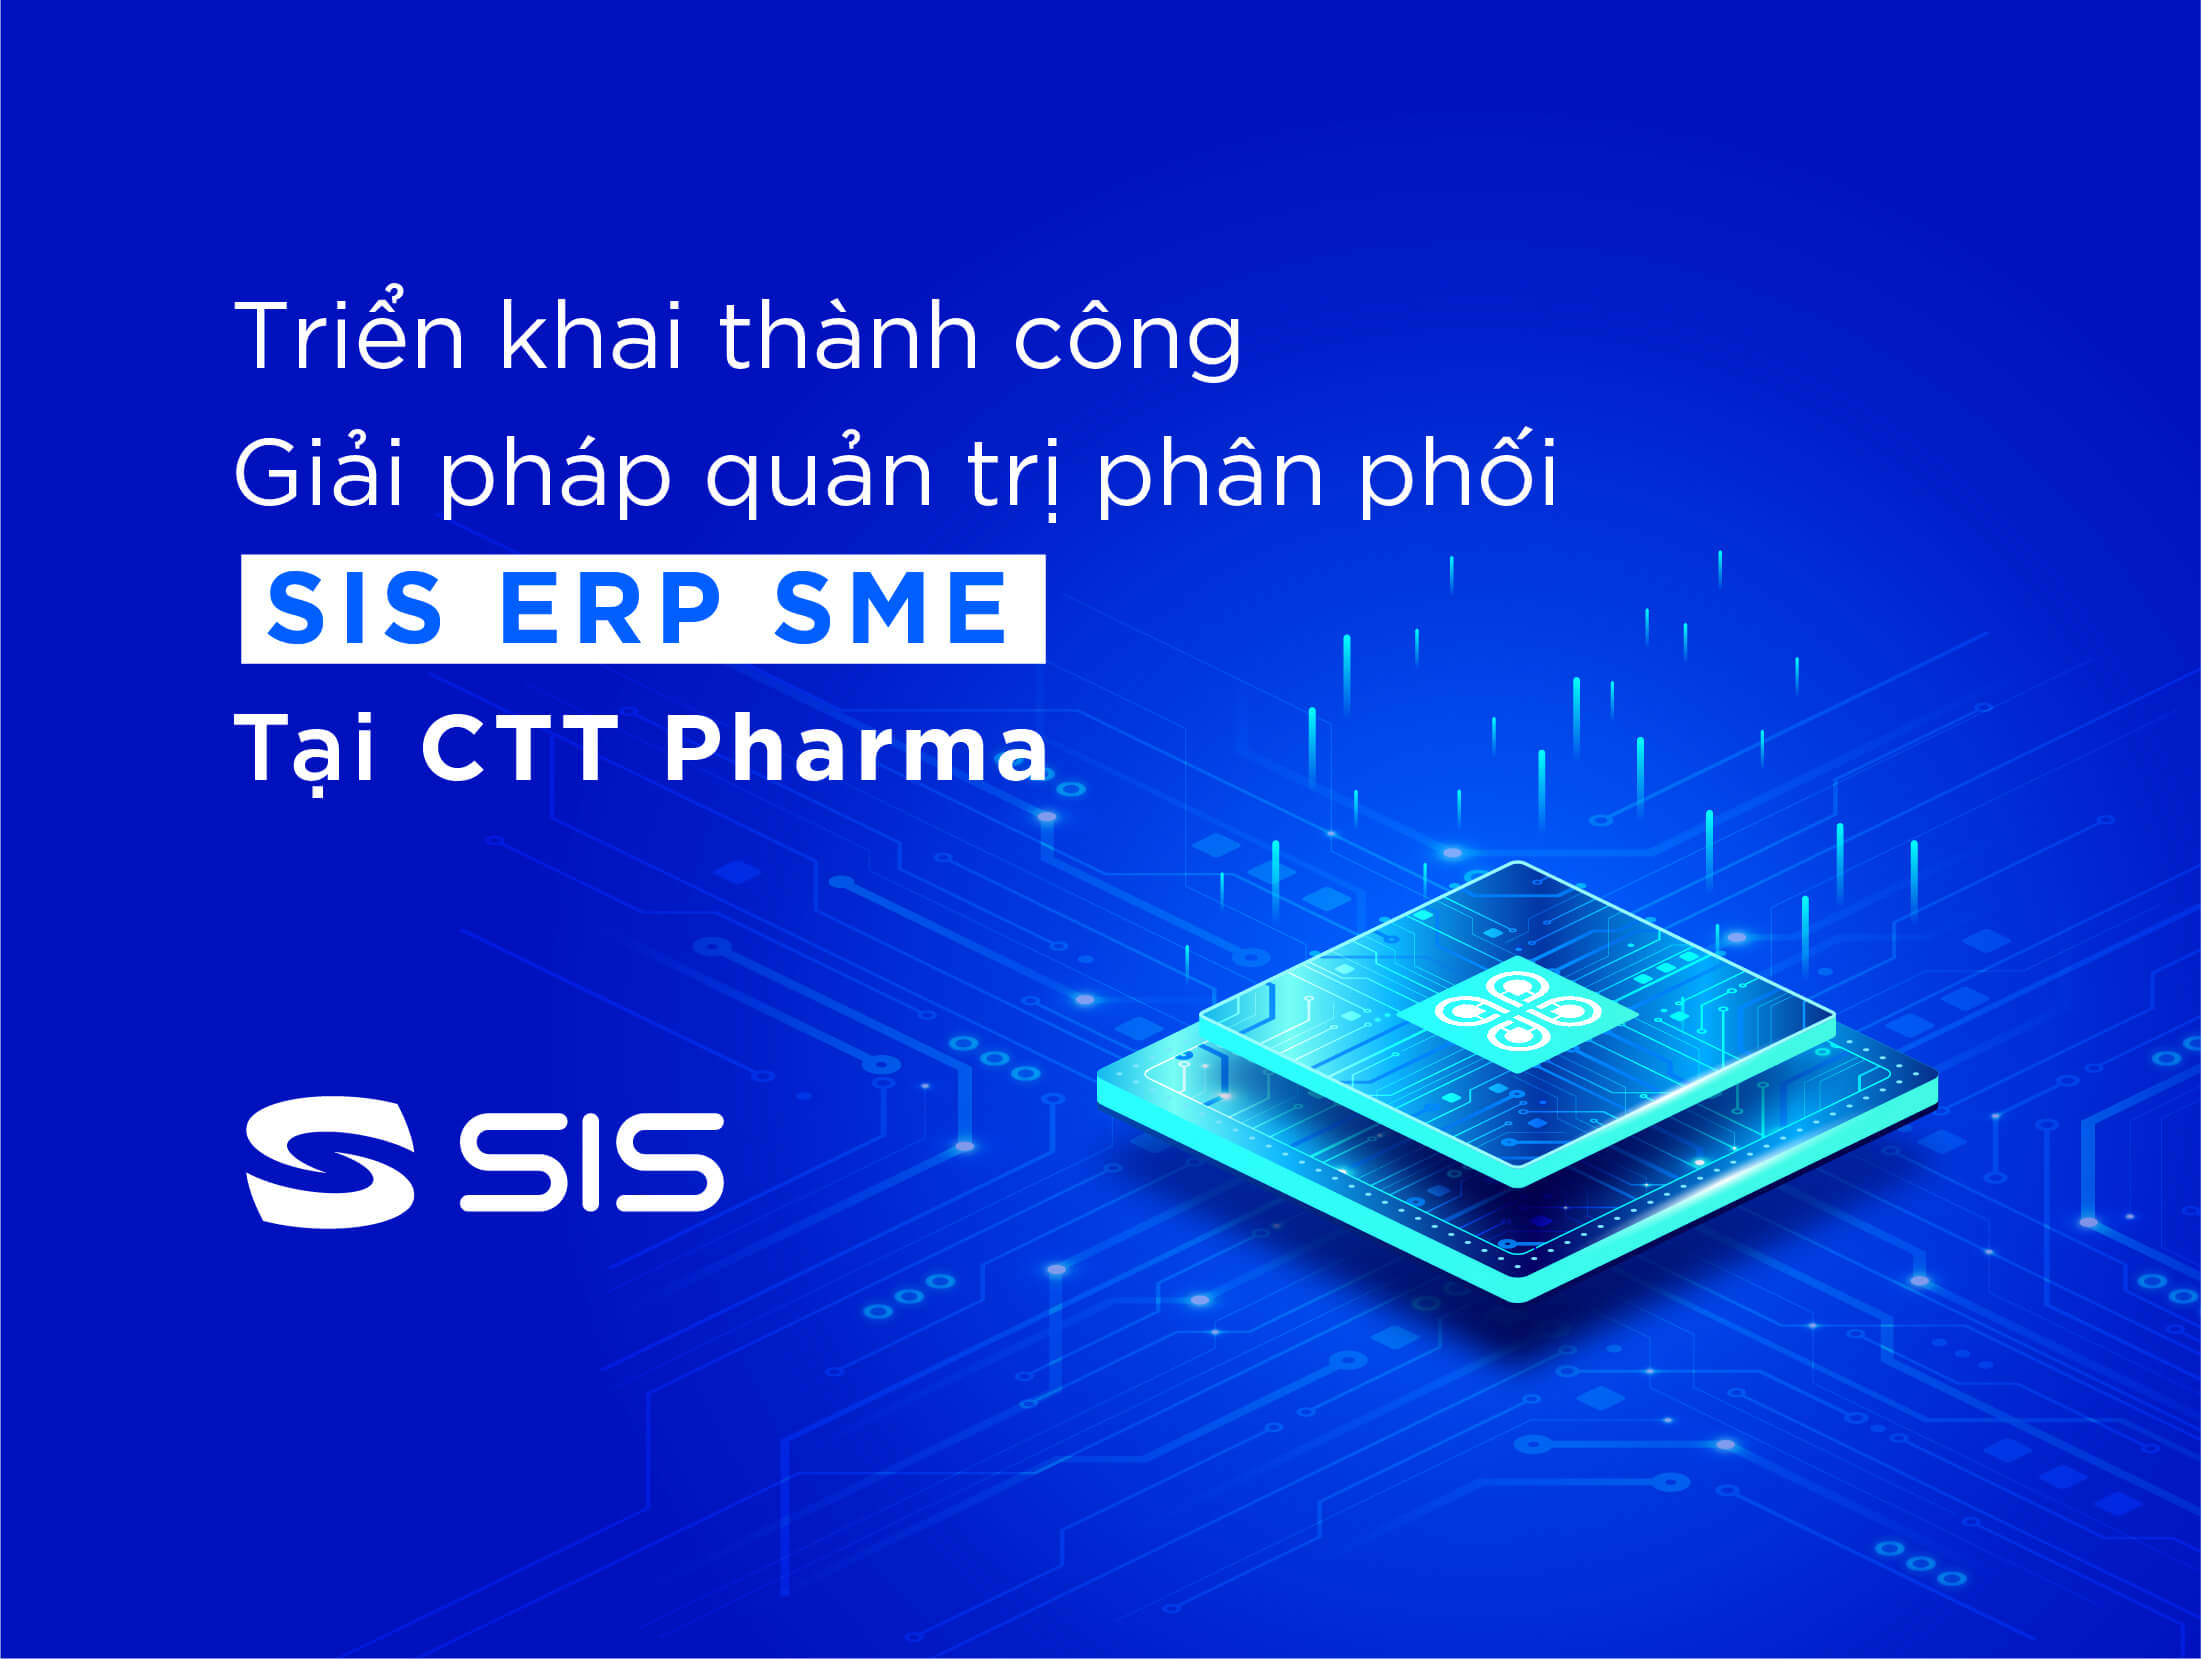 Triển khai thành công SIS ERP tại Công ty dược phẩm CTT